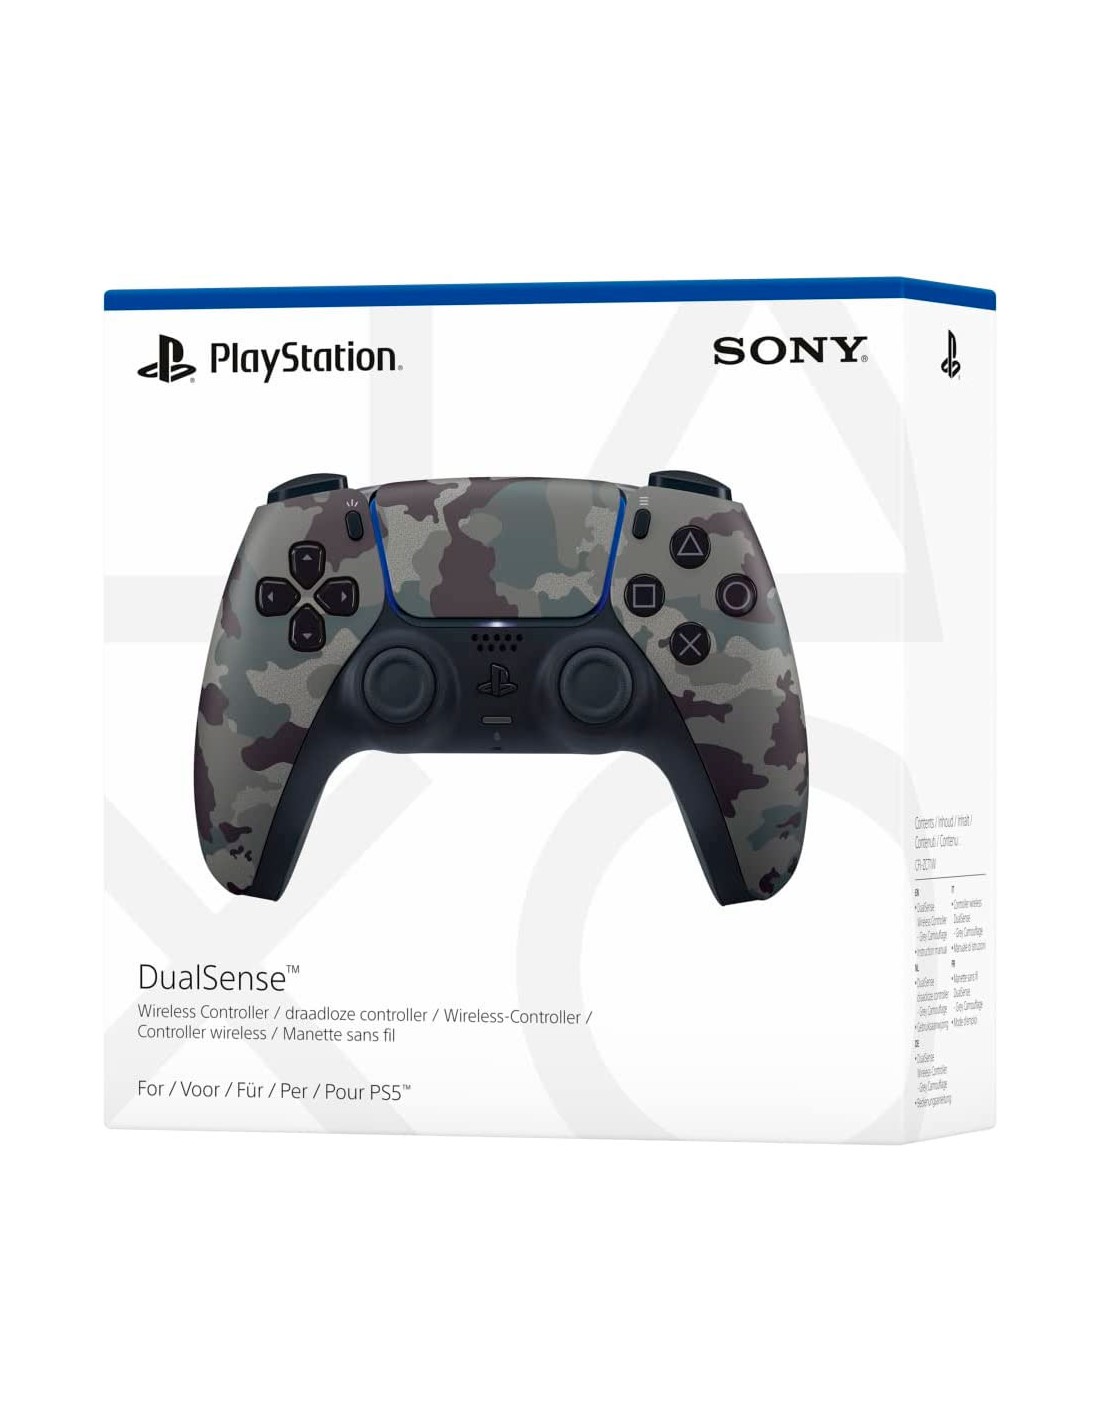 Mando inalámbrico DualSense, El innovador mando de PS5